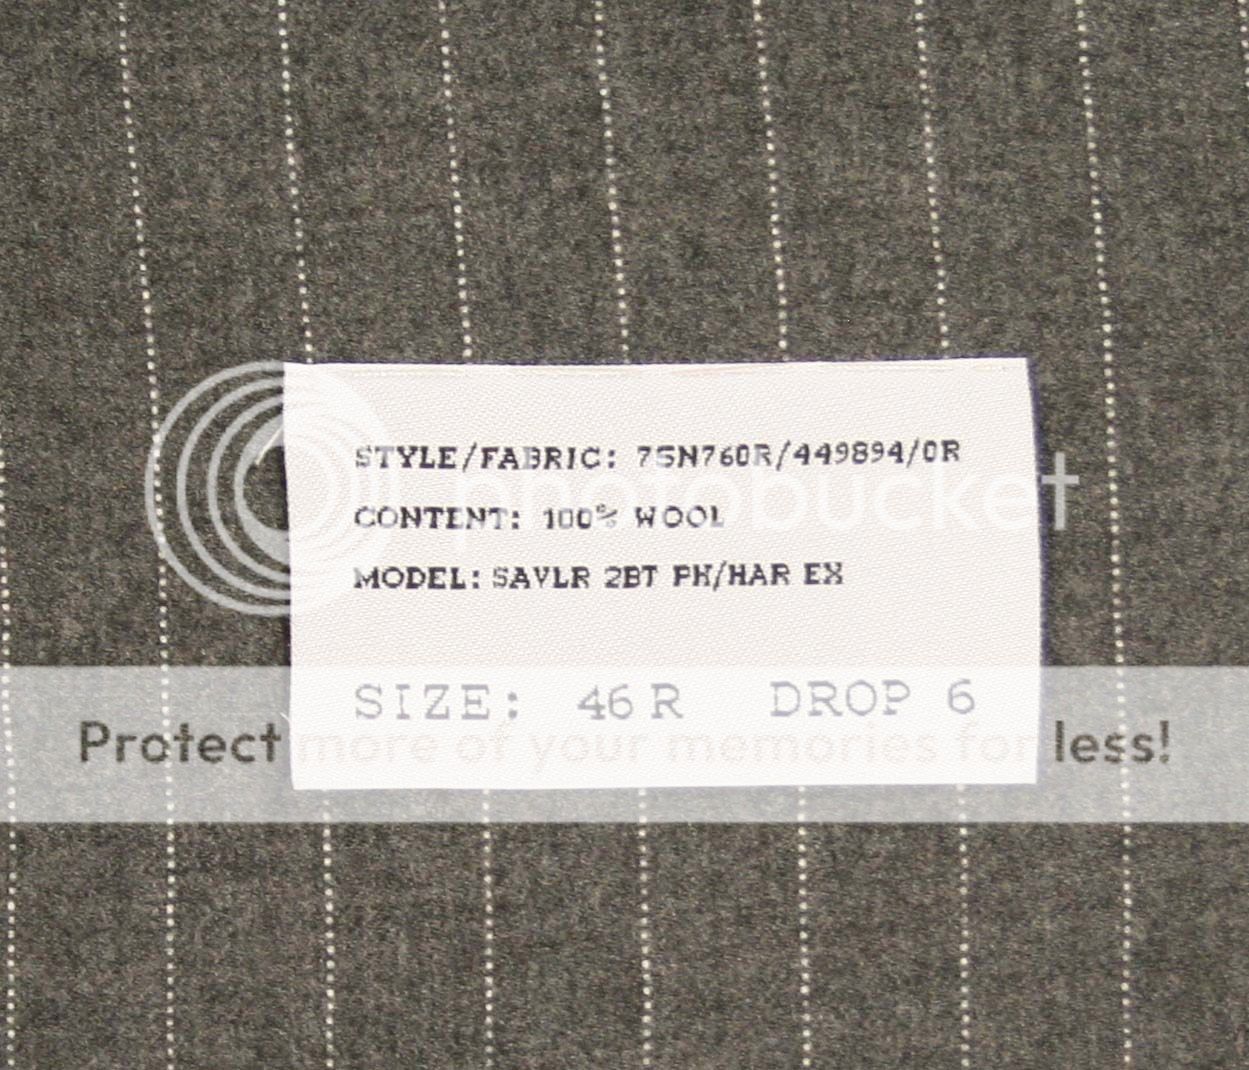 Ralph Lauren Purple Label Gray Wool Suit 46 R New $4895  